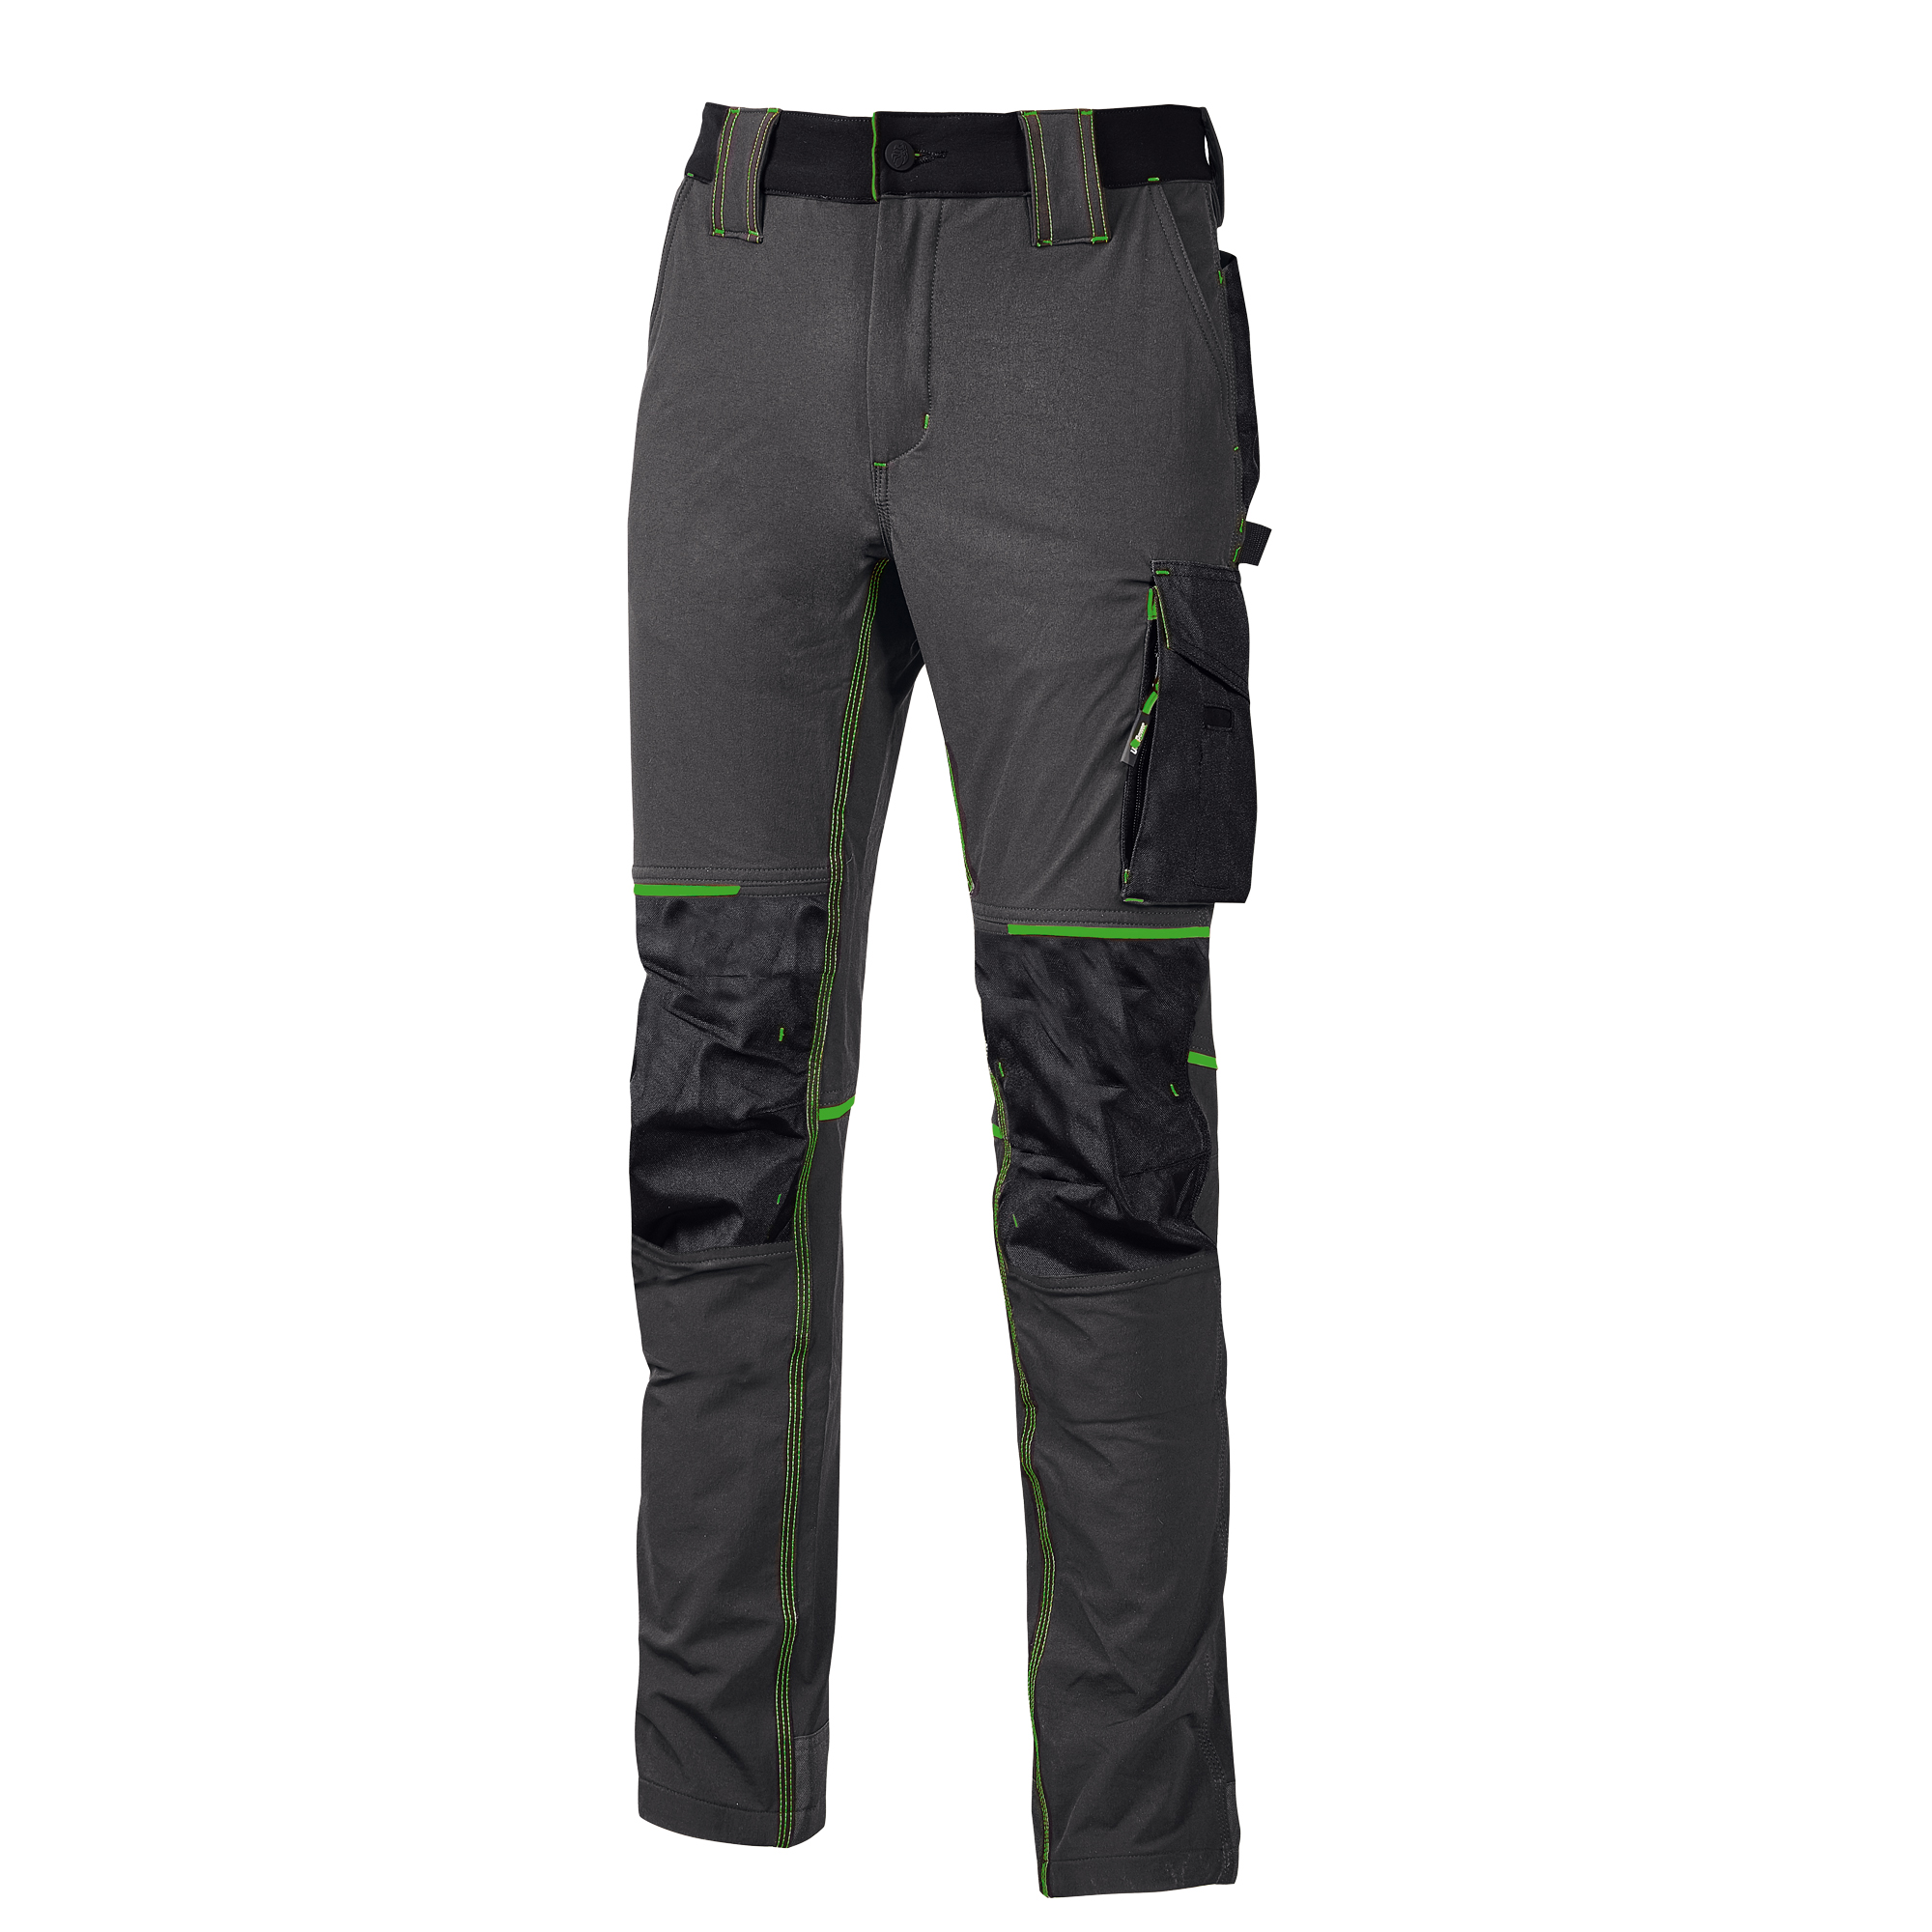 Pantaloni da lavoro Atom taglia L grigio/verde U-power